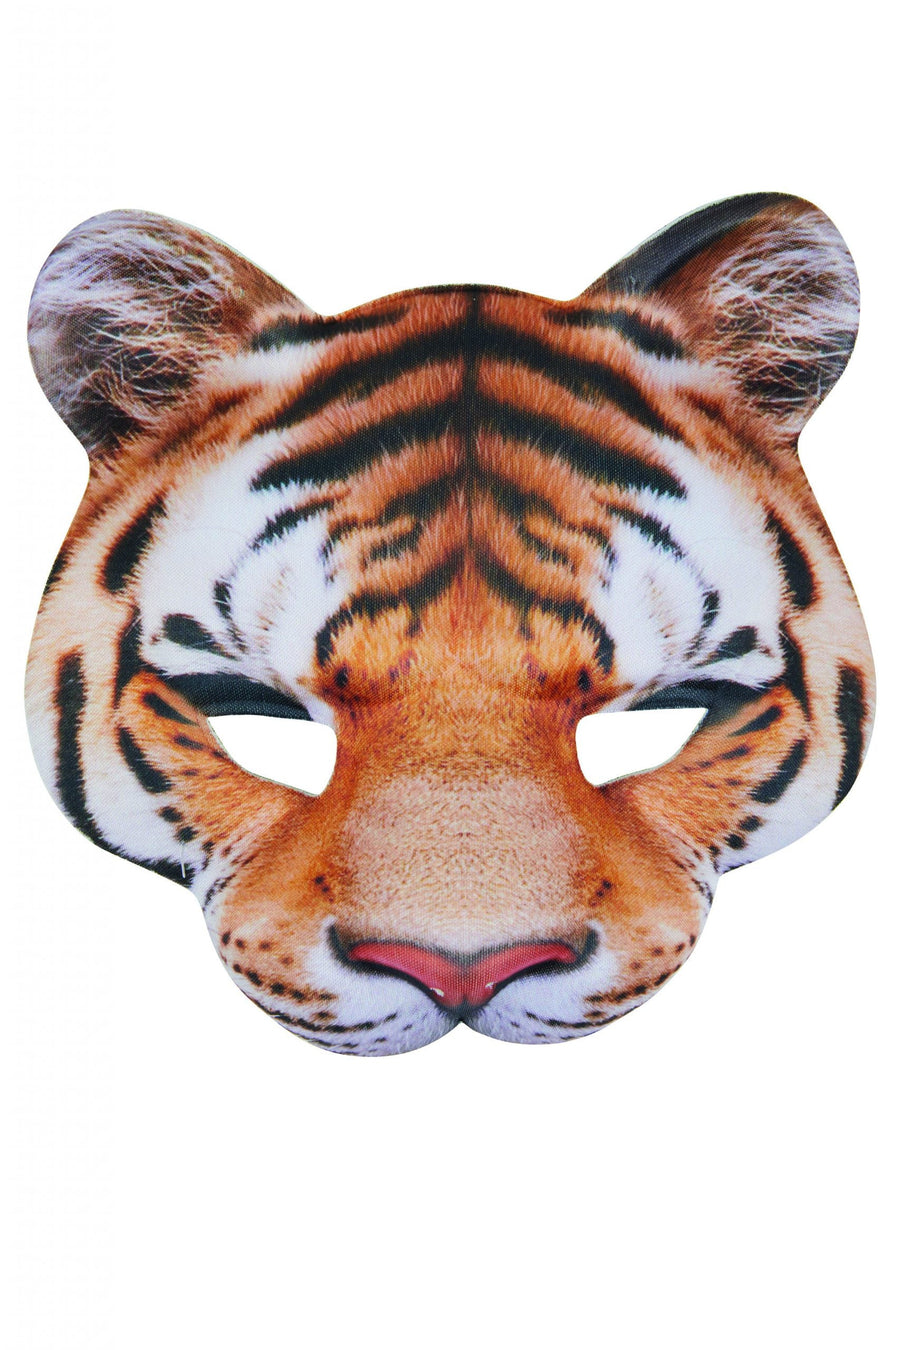 Tiger Mask EVA Jungle Animal_1